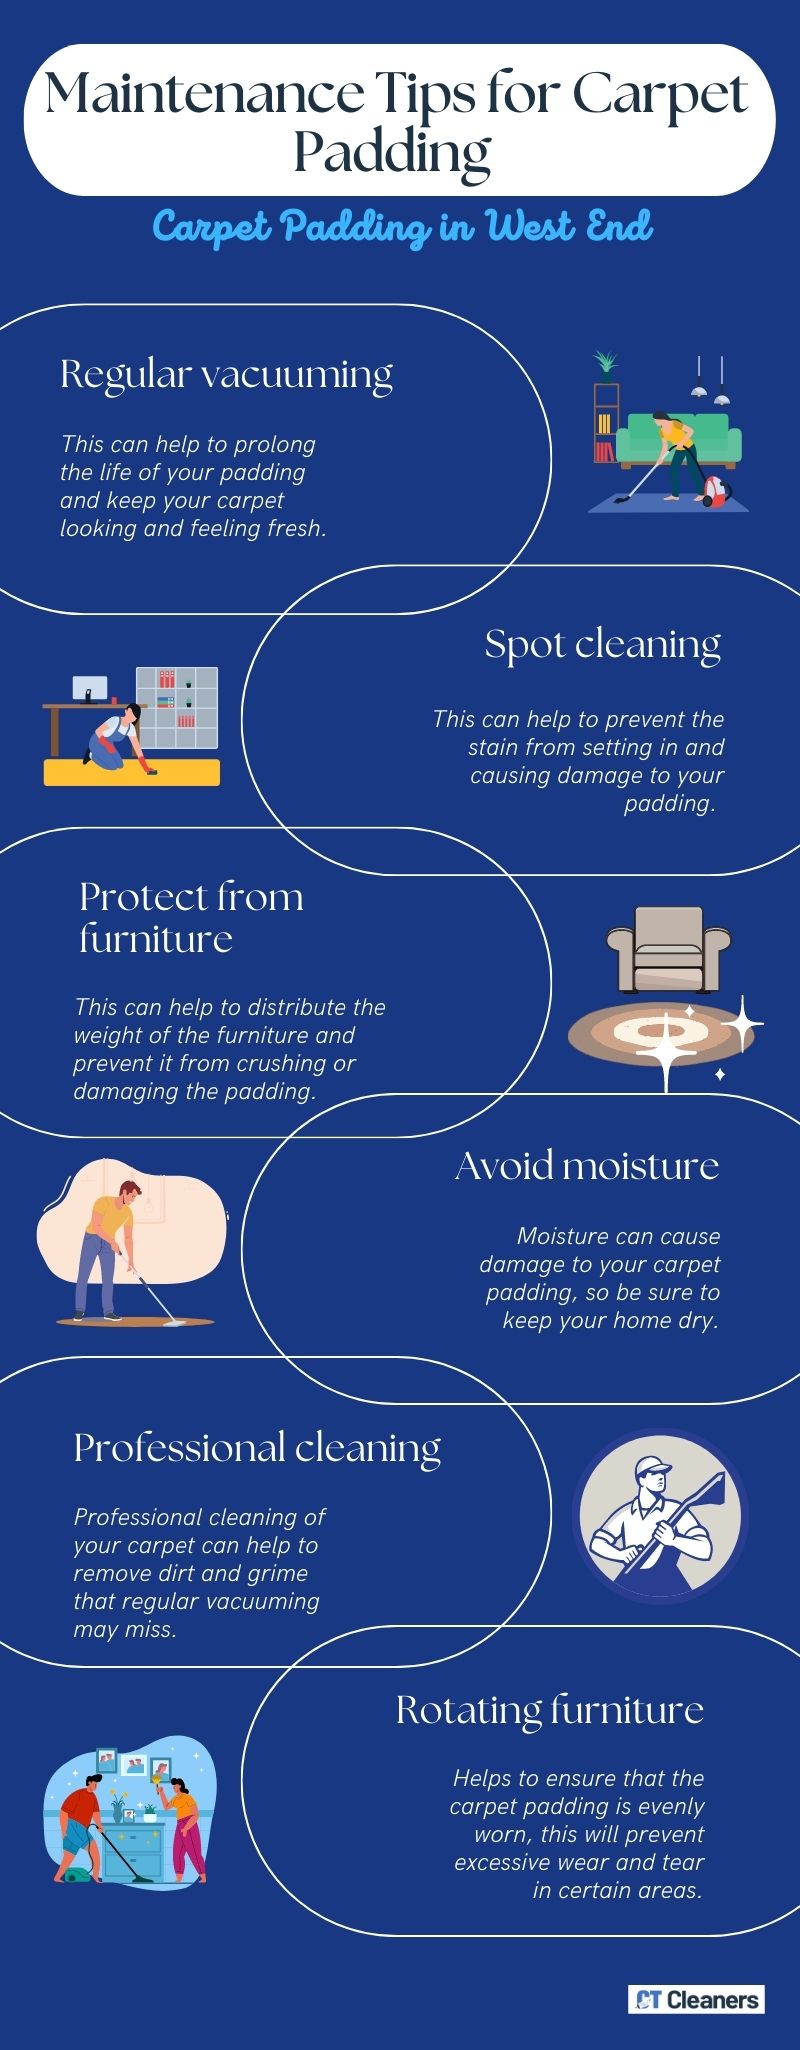 Maintenance Tips for Carpet Padding